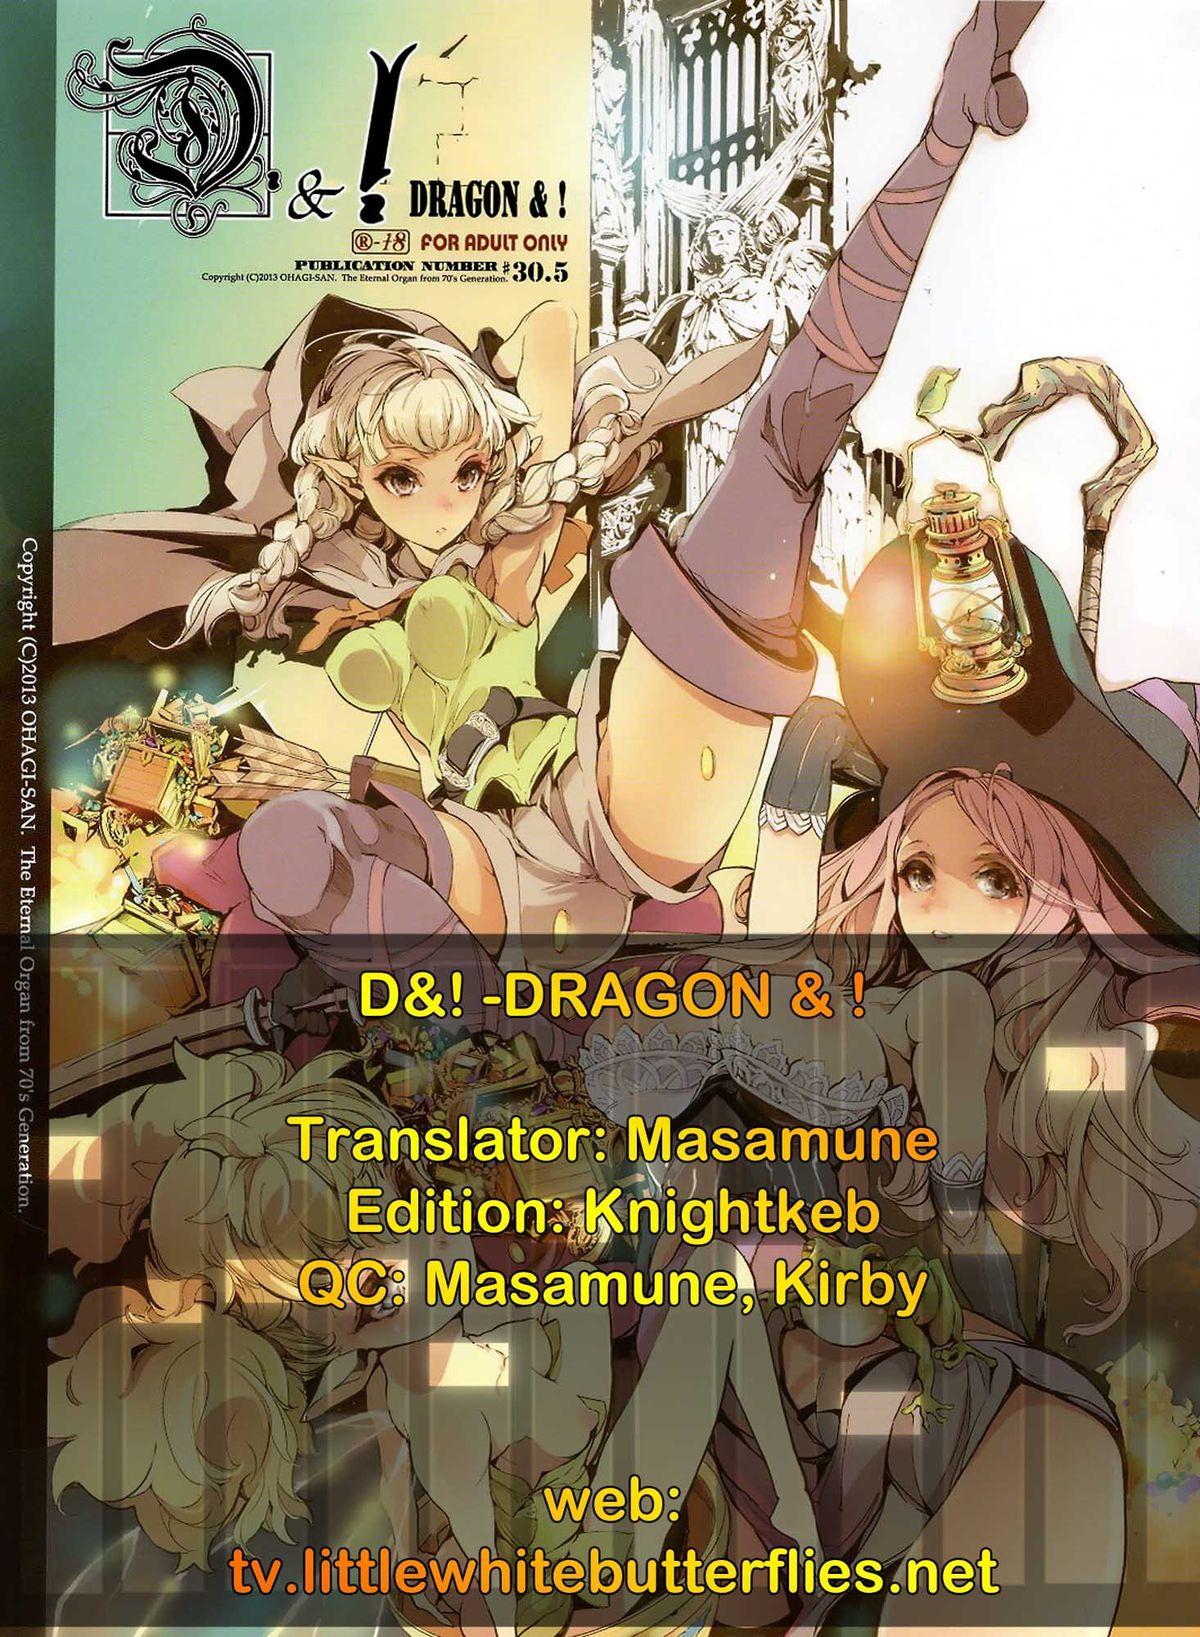 D&! -DRAGON & ! 8